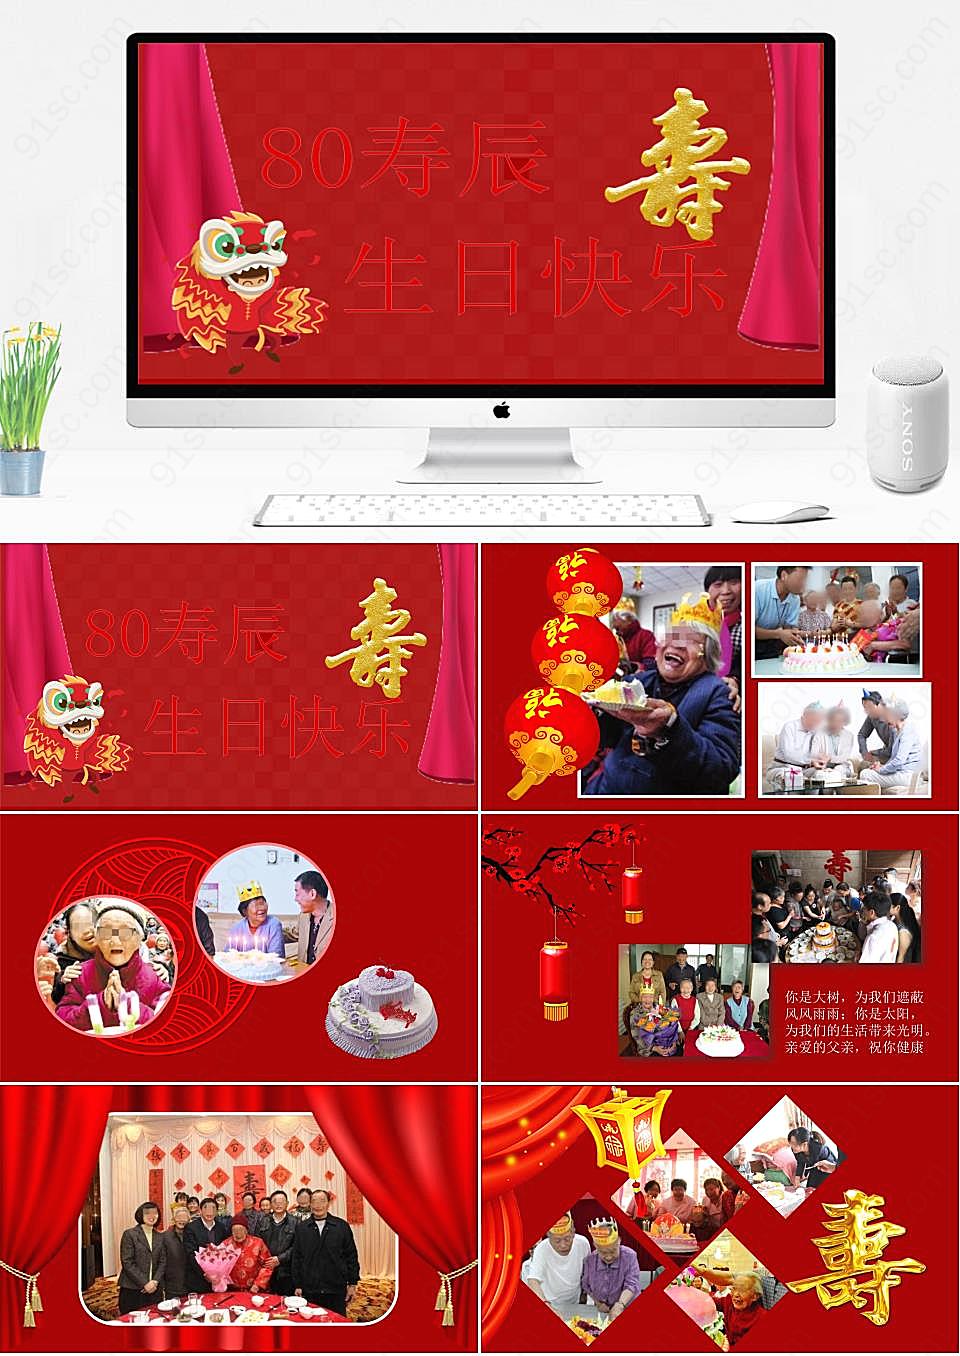 红色主题老寿星八十大寿庆典生日快乐PPT模板节日庆典下载